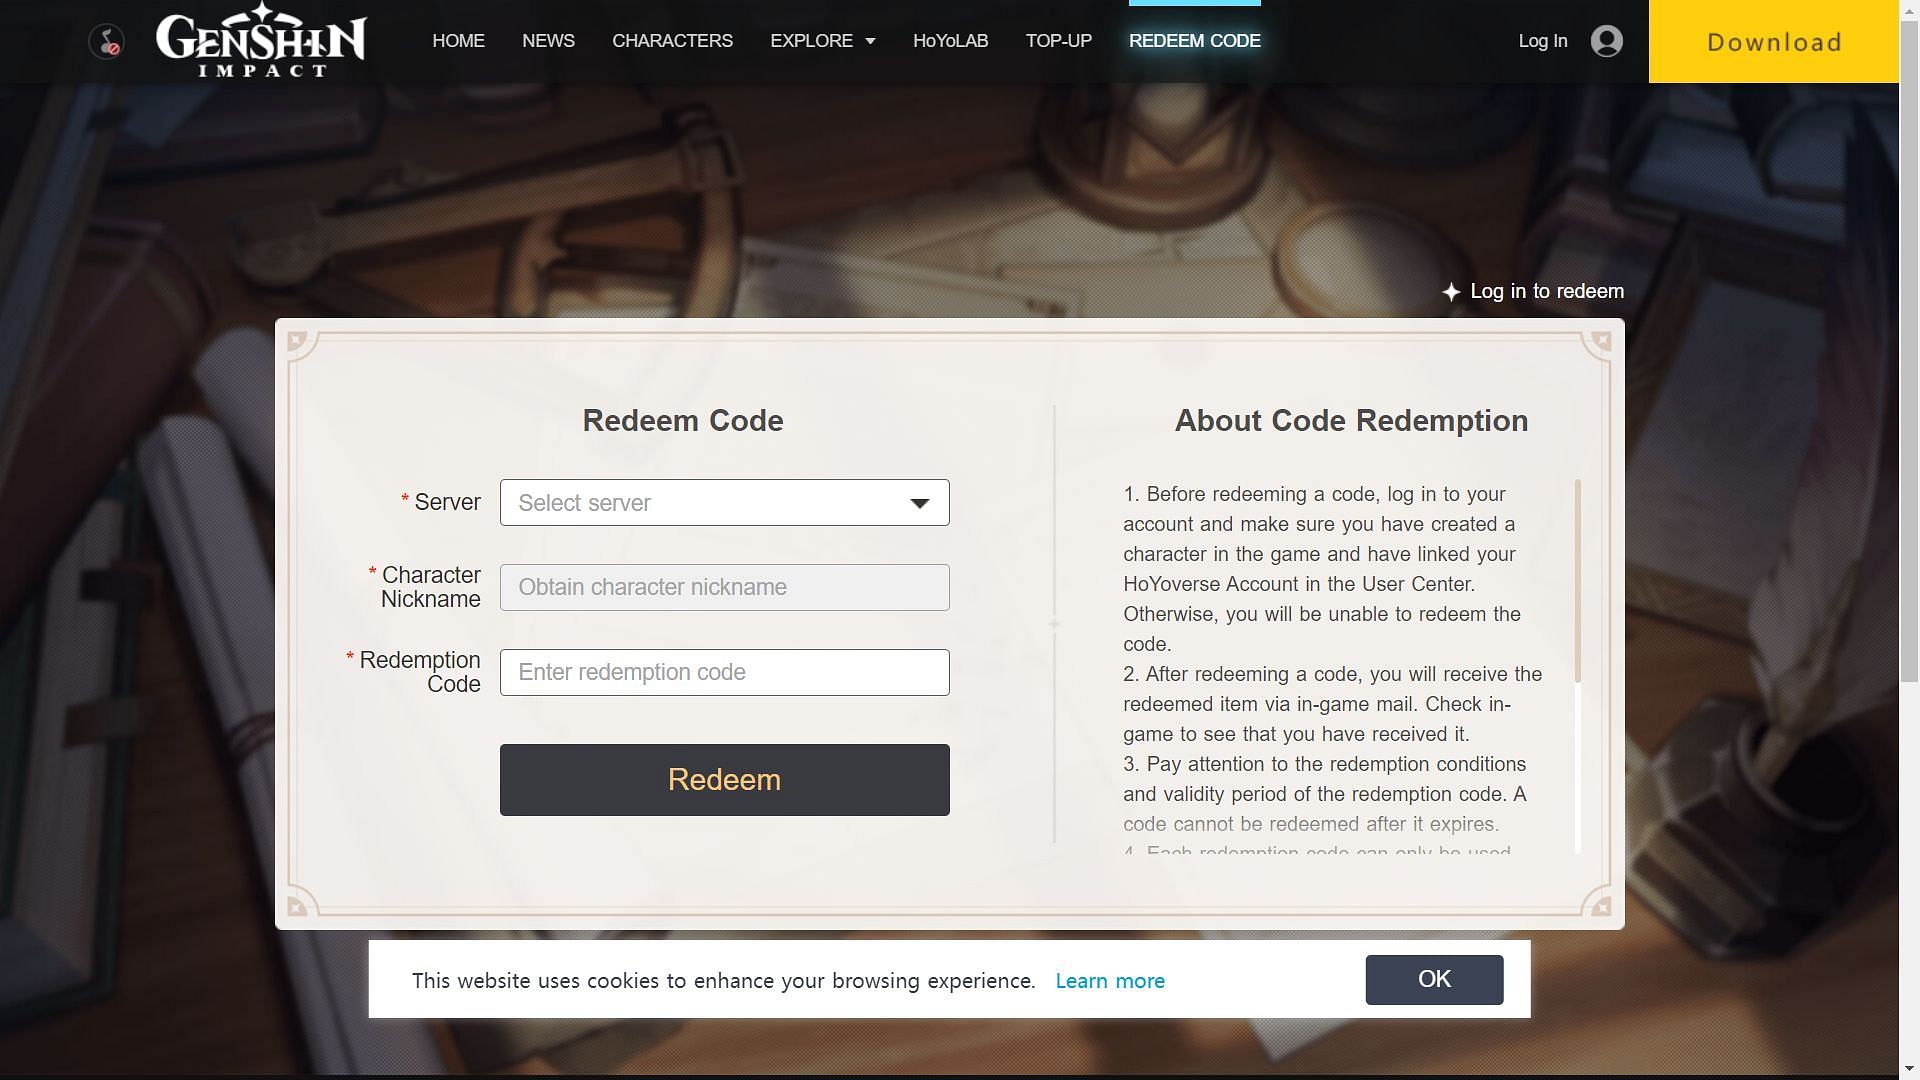 Official website to redeem code (Image via HoYoverse)